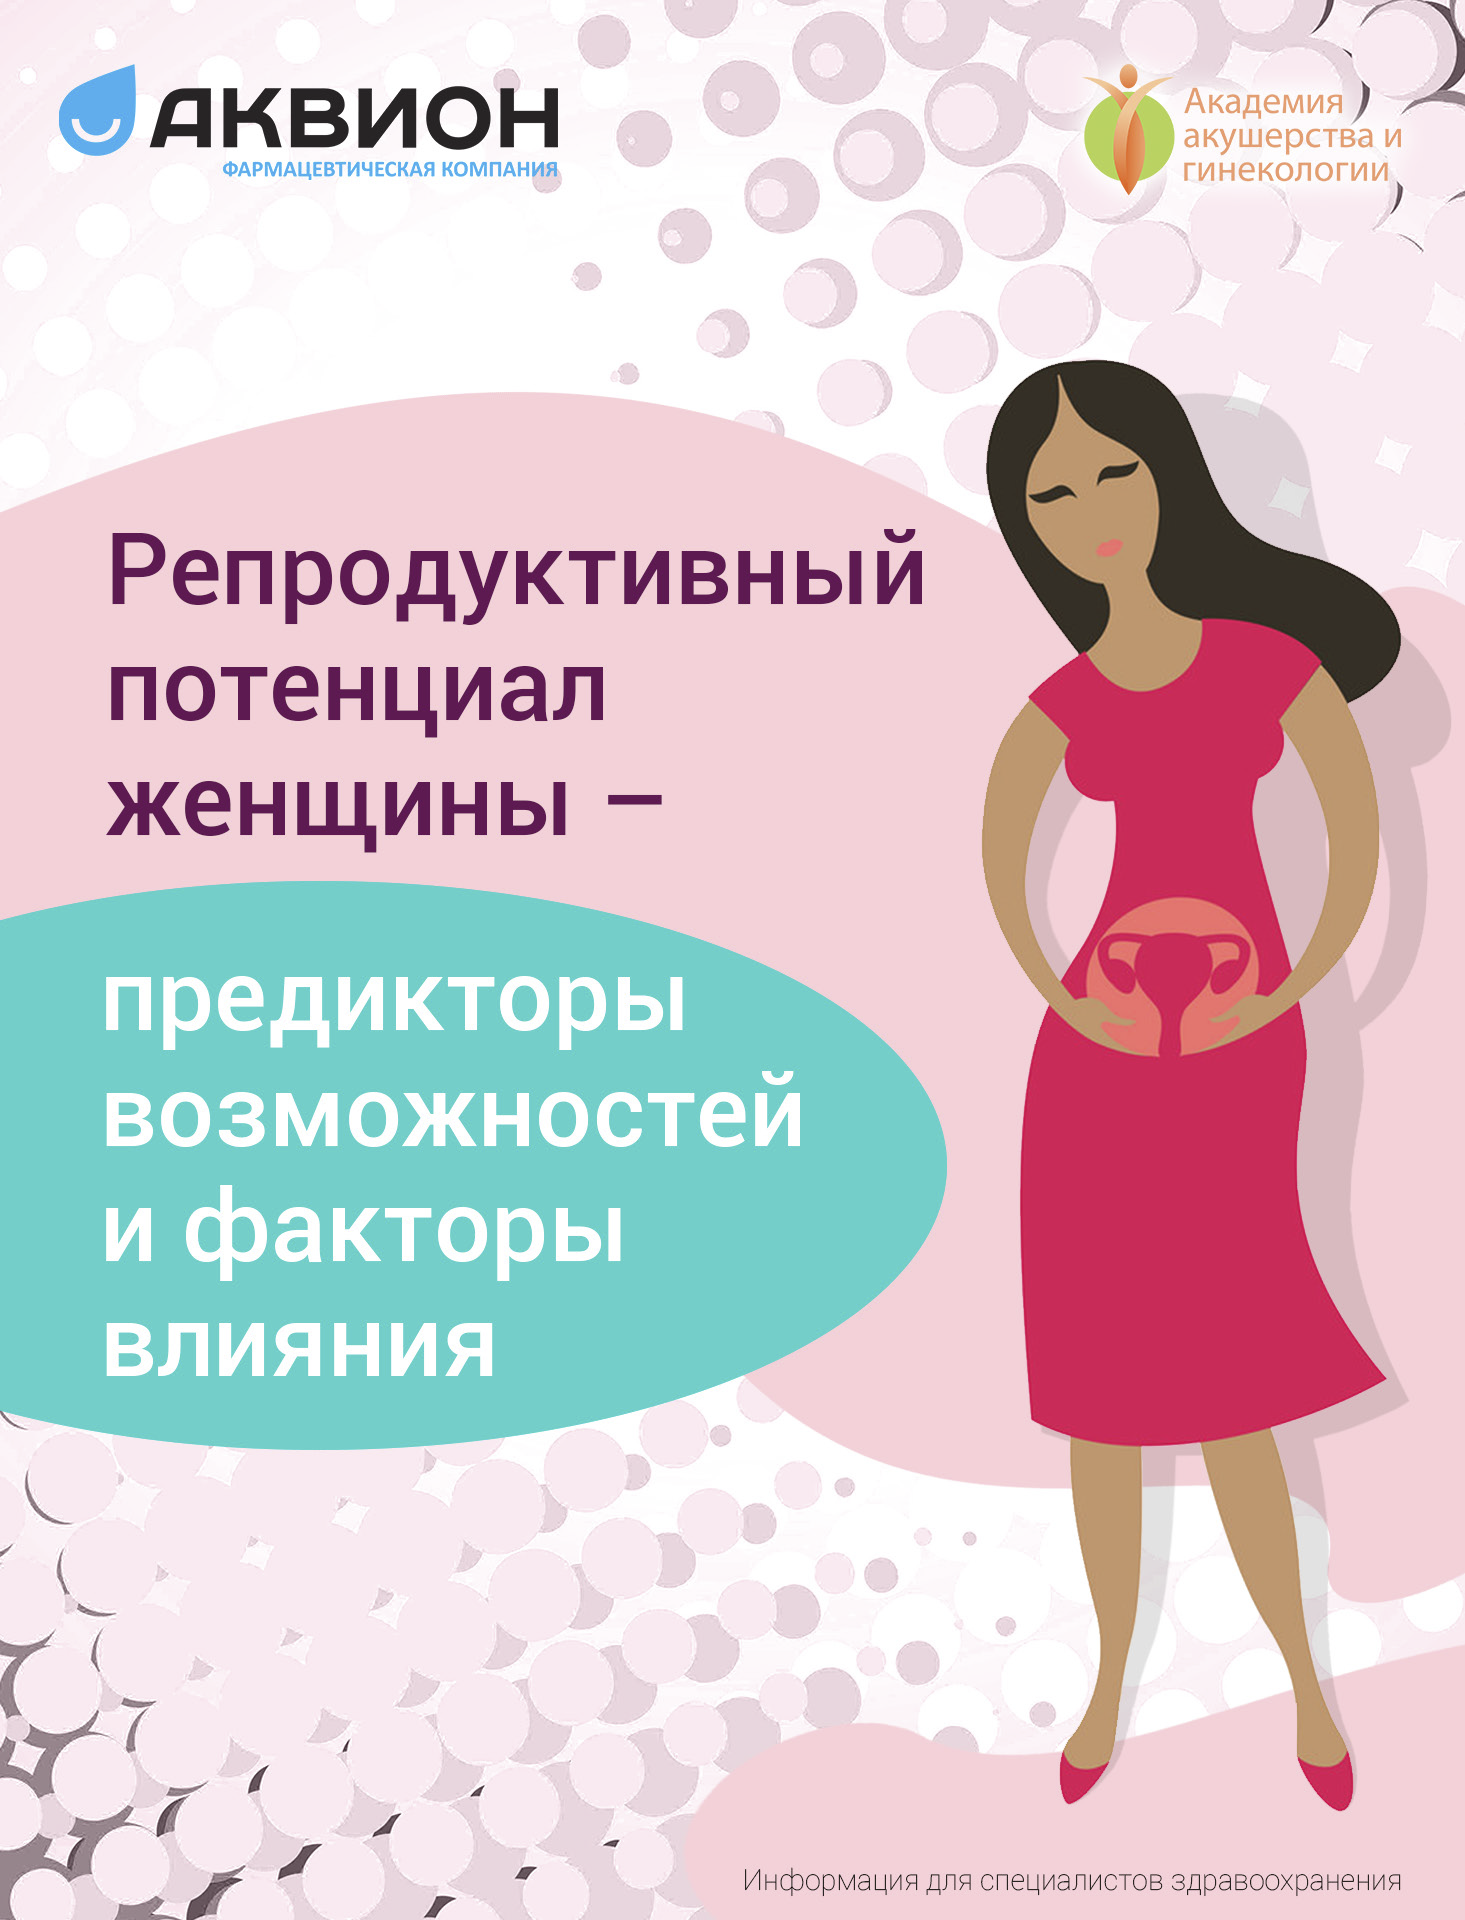 Репродуктивный потенциал женщины - предикторы возможностей и факторы влияния 